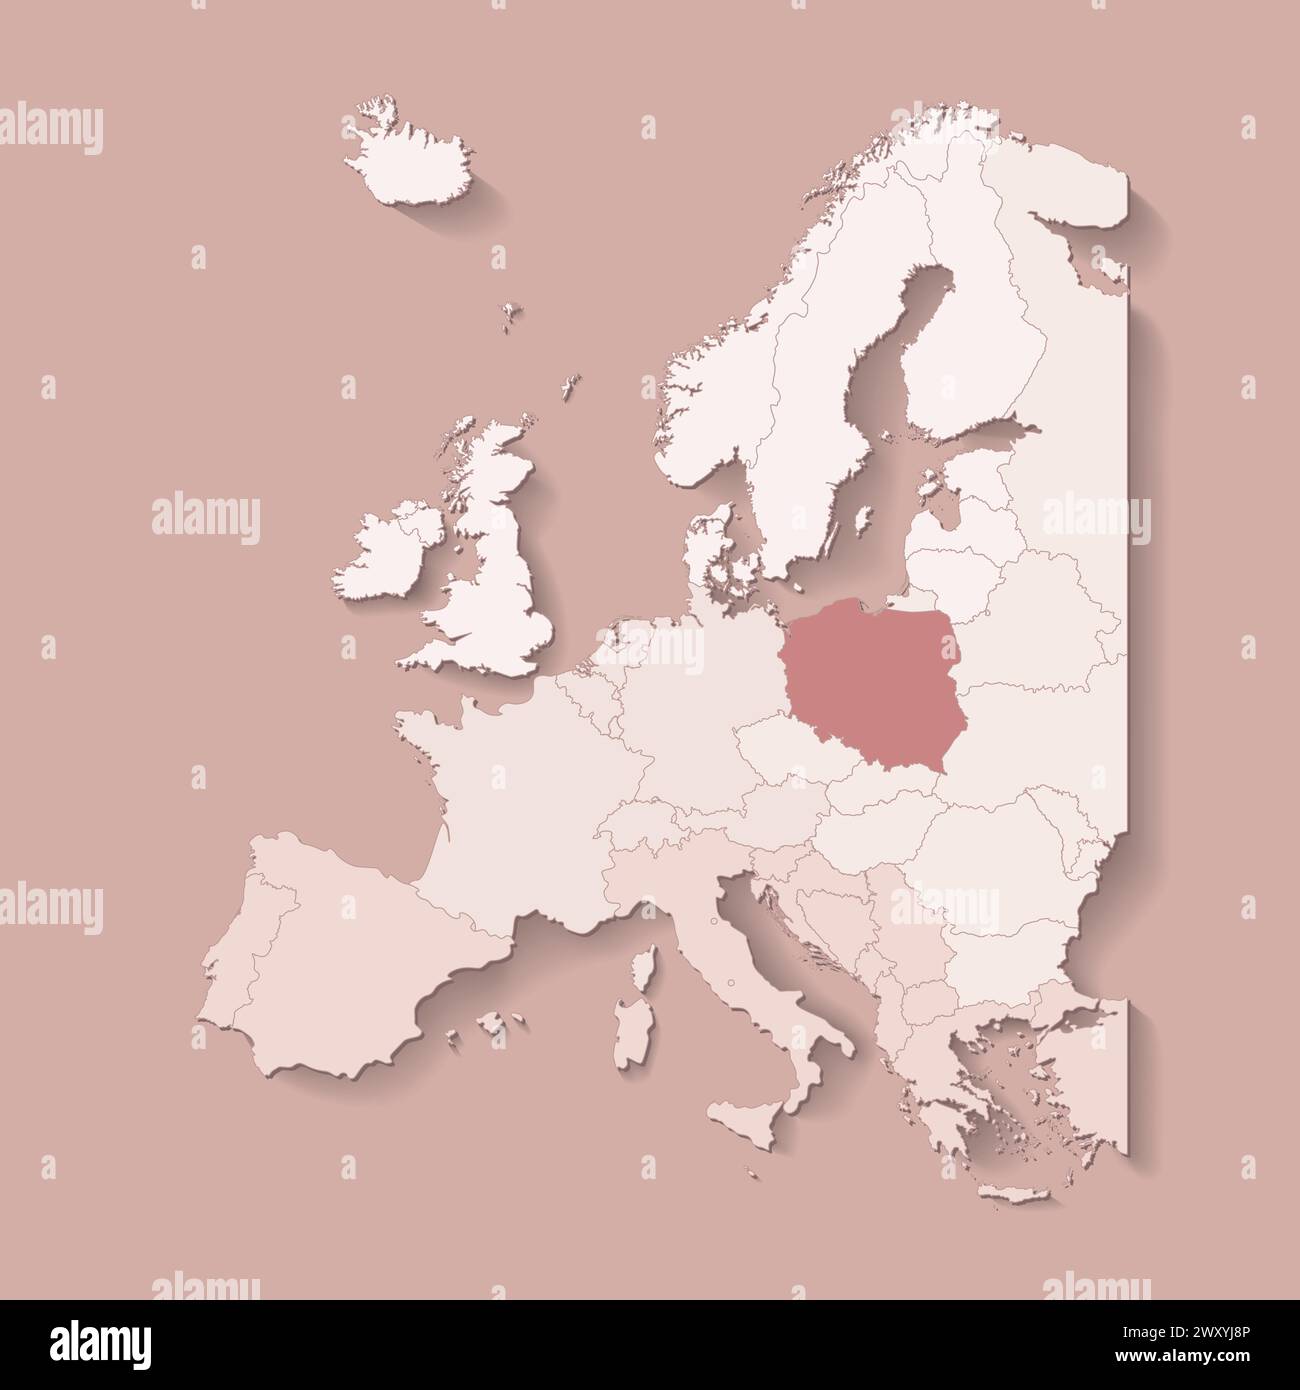 Illustrazione vettoriale con terra europea con confini di stati e paese contrassegnato Polonia. Mappa politica in colori marroni con occidentale, sud e così via Illustrazione Vettoriale